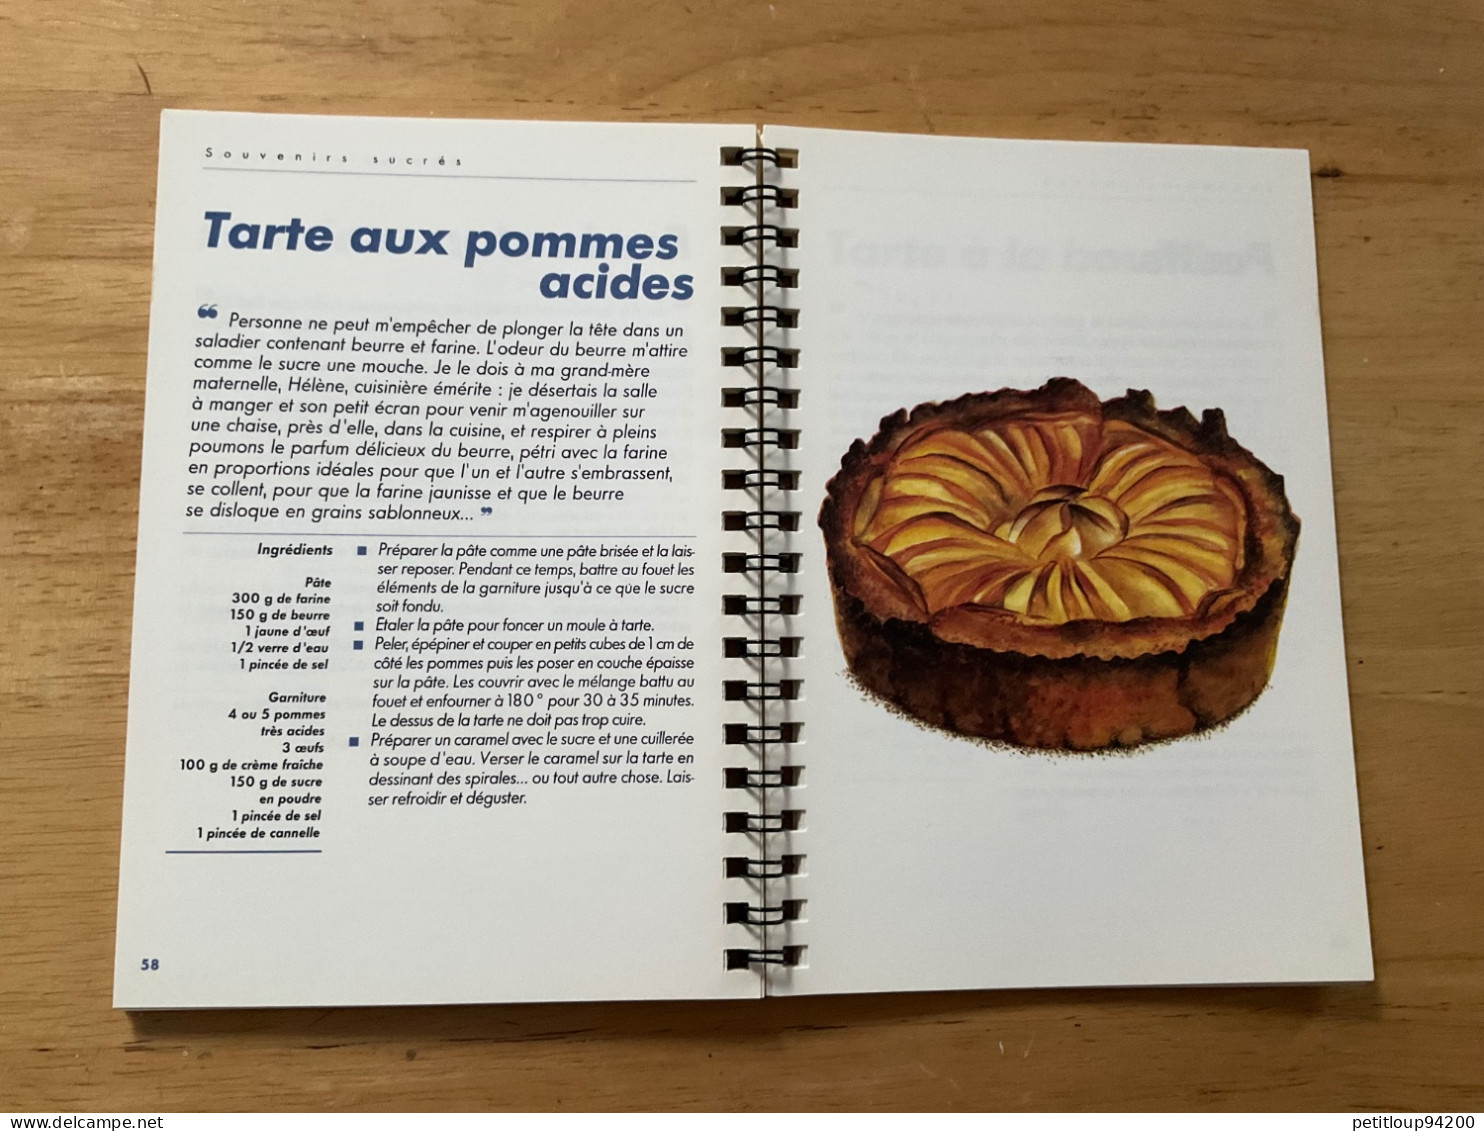 SOUVENIRS SUCRÉS Desserts et Douceurs de l’Enfance  CANAL+  Éditions Mille et une Nuits  EMILE ROUX